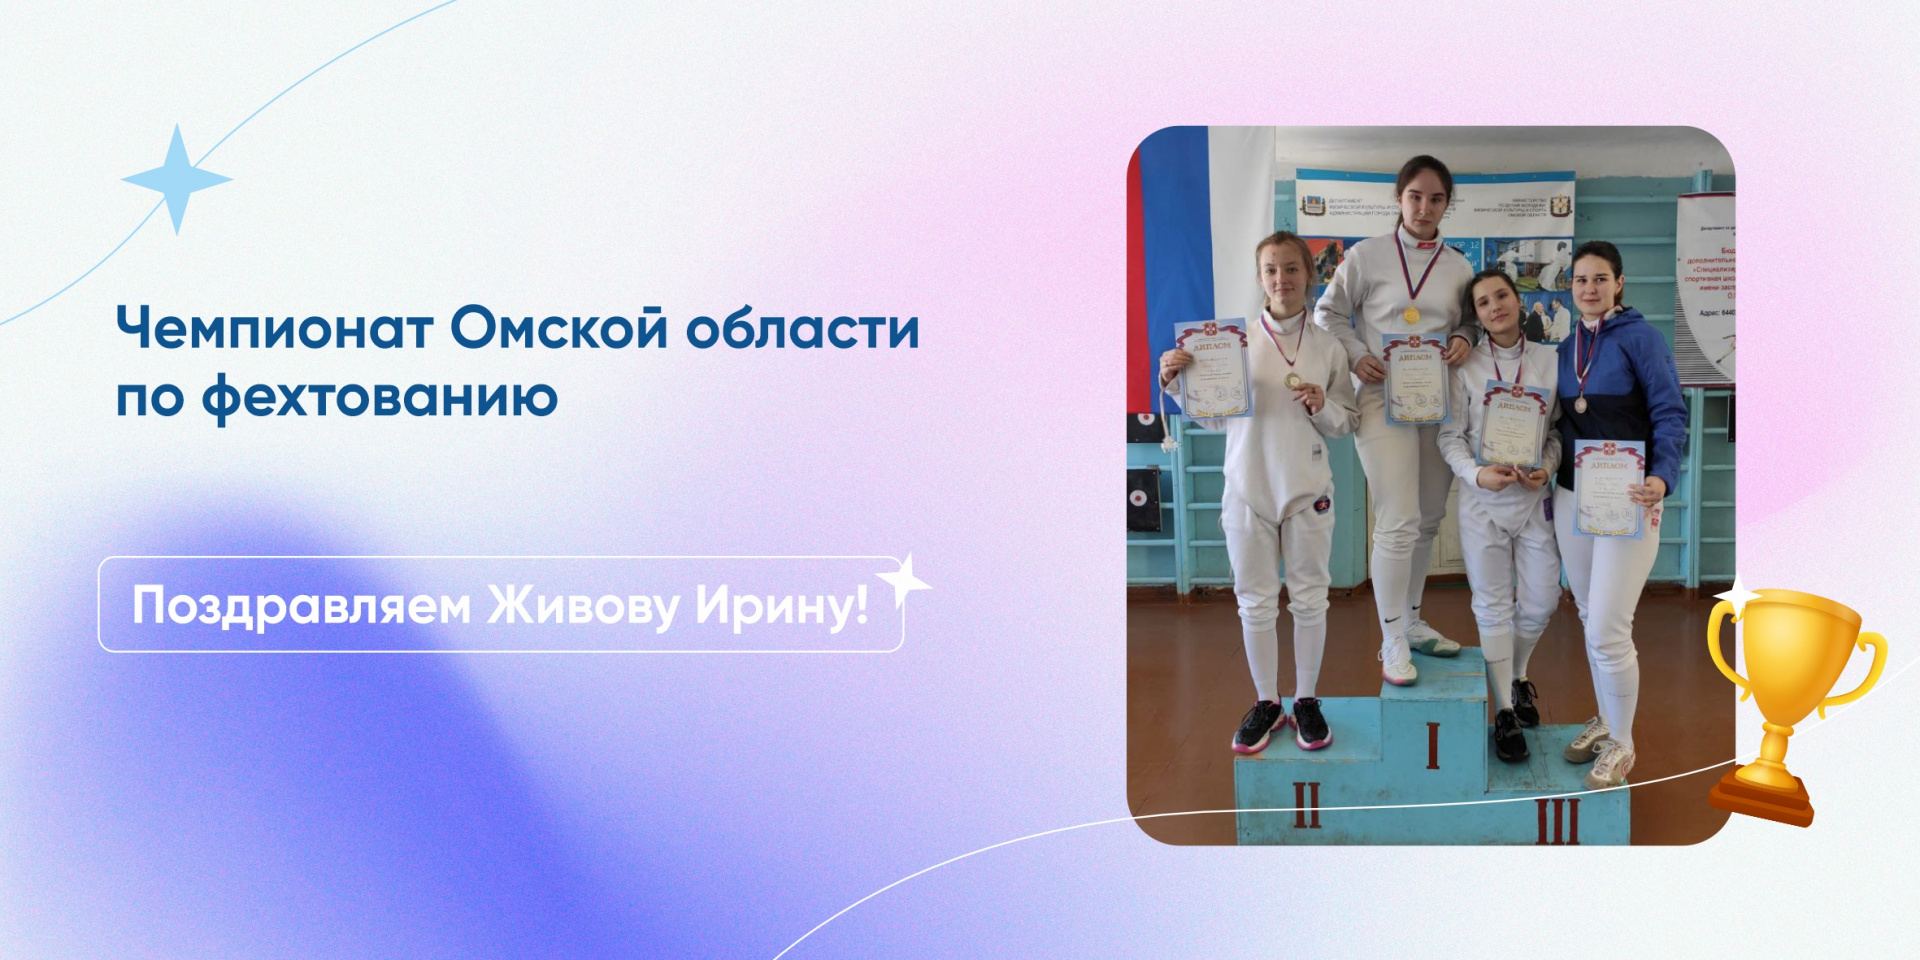 Студентка СибАДИ на пьедестале почета Чемпионата Омской области по фехтованию